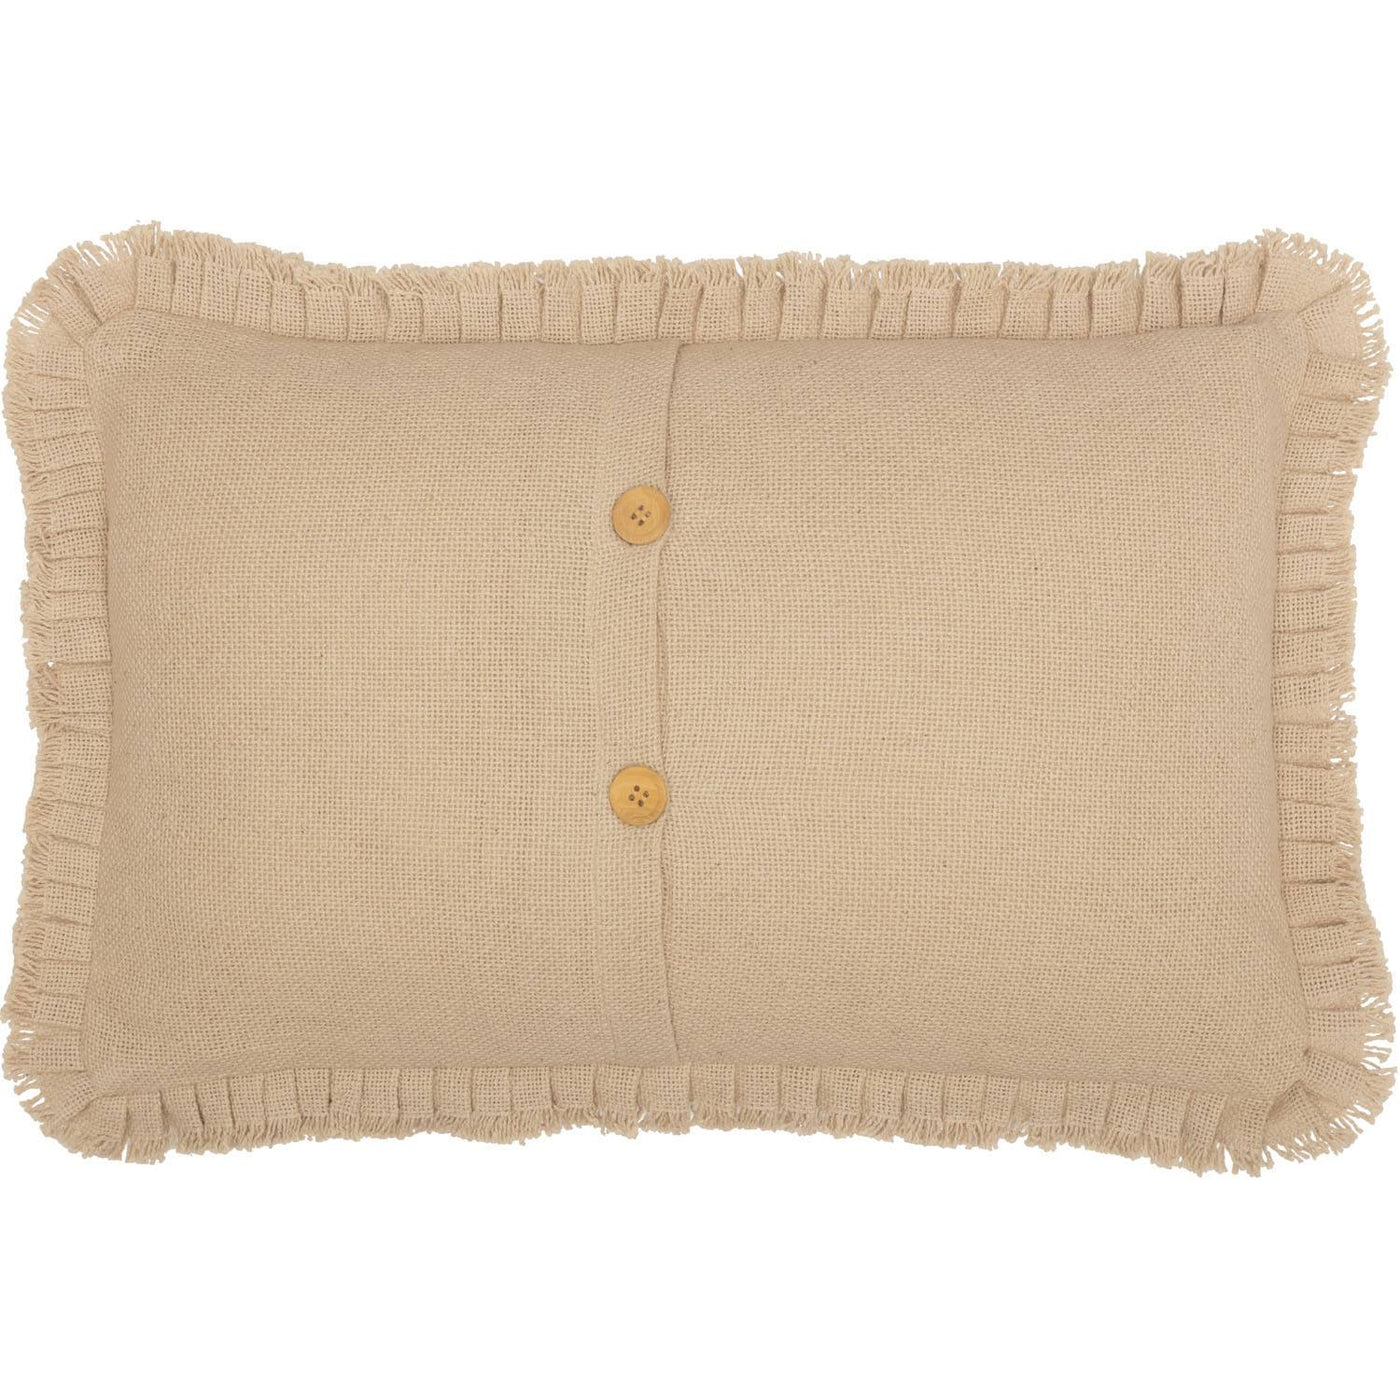 Athol 14 x 22 Pillow - Vintage Tan